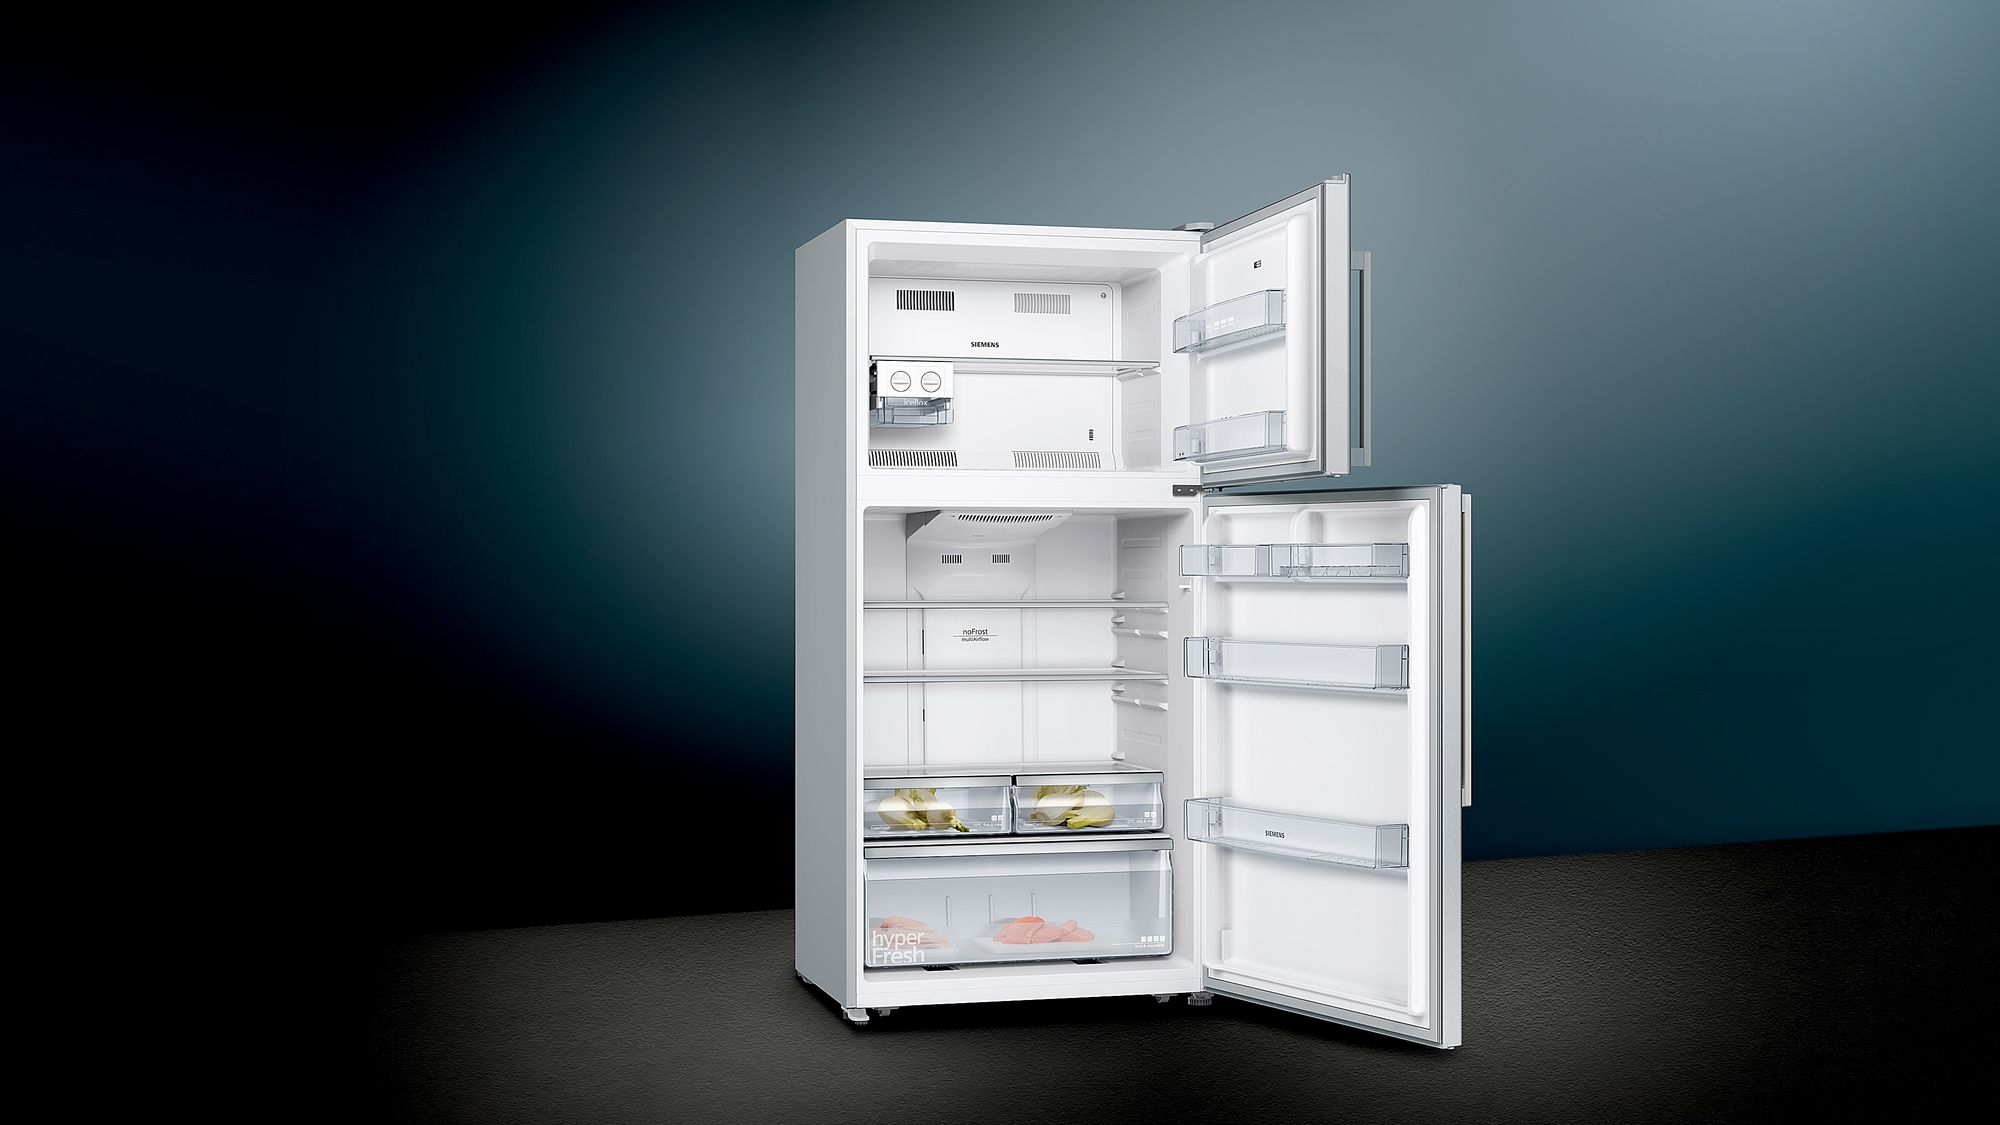 iQ300 Üstten Donduruculu Buzdolabı 180.6 x 86 cm Kolay temizlenebilir Inox